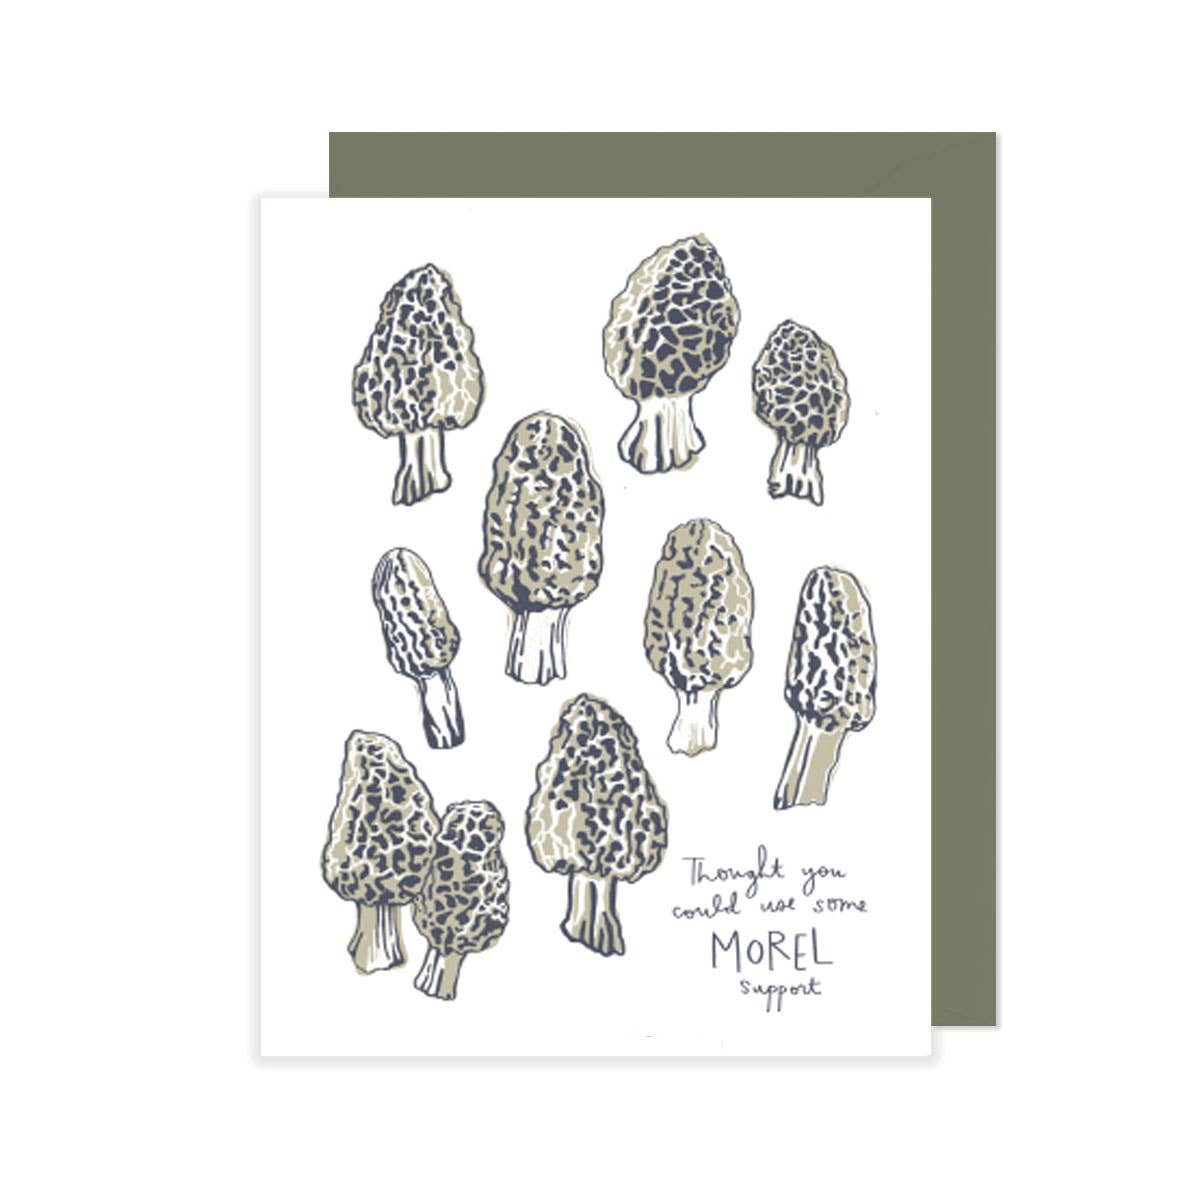 Morel Support - Mushroom Encouragement Card